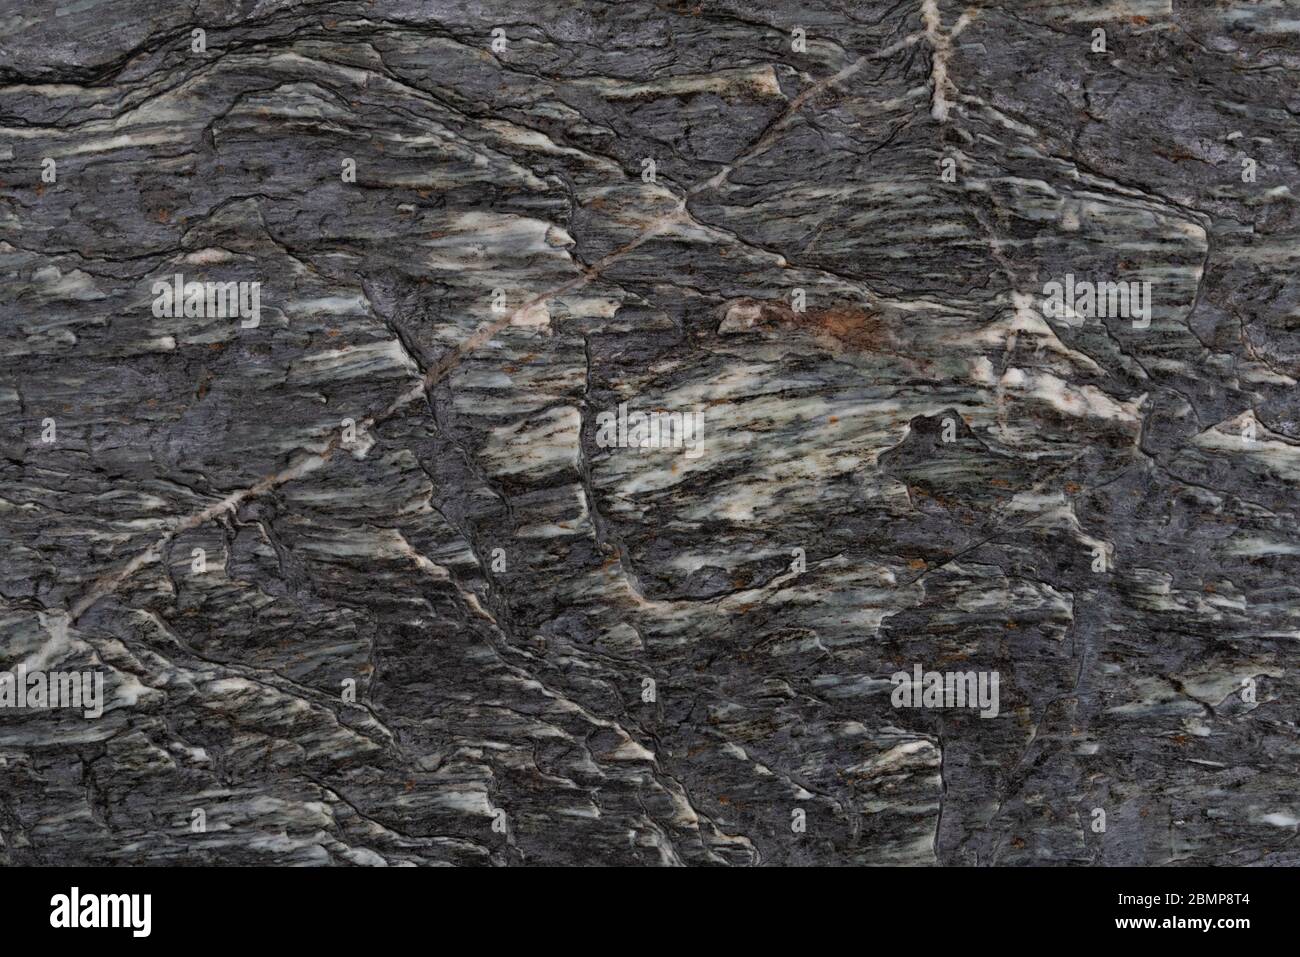 Arrière-plan abstrait de la surface rugueuse de roche sombre texturée avec des lignes et des inlay blancs Banque D'Images